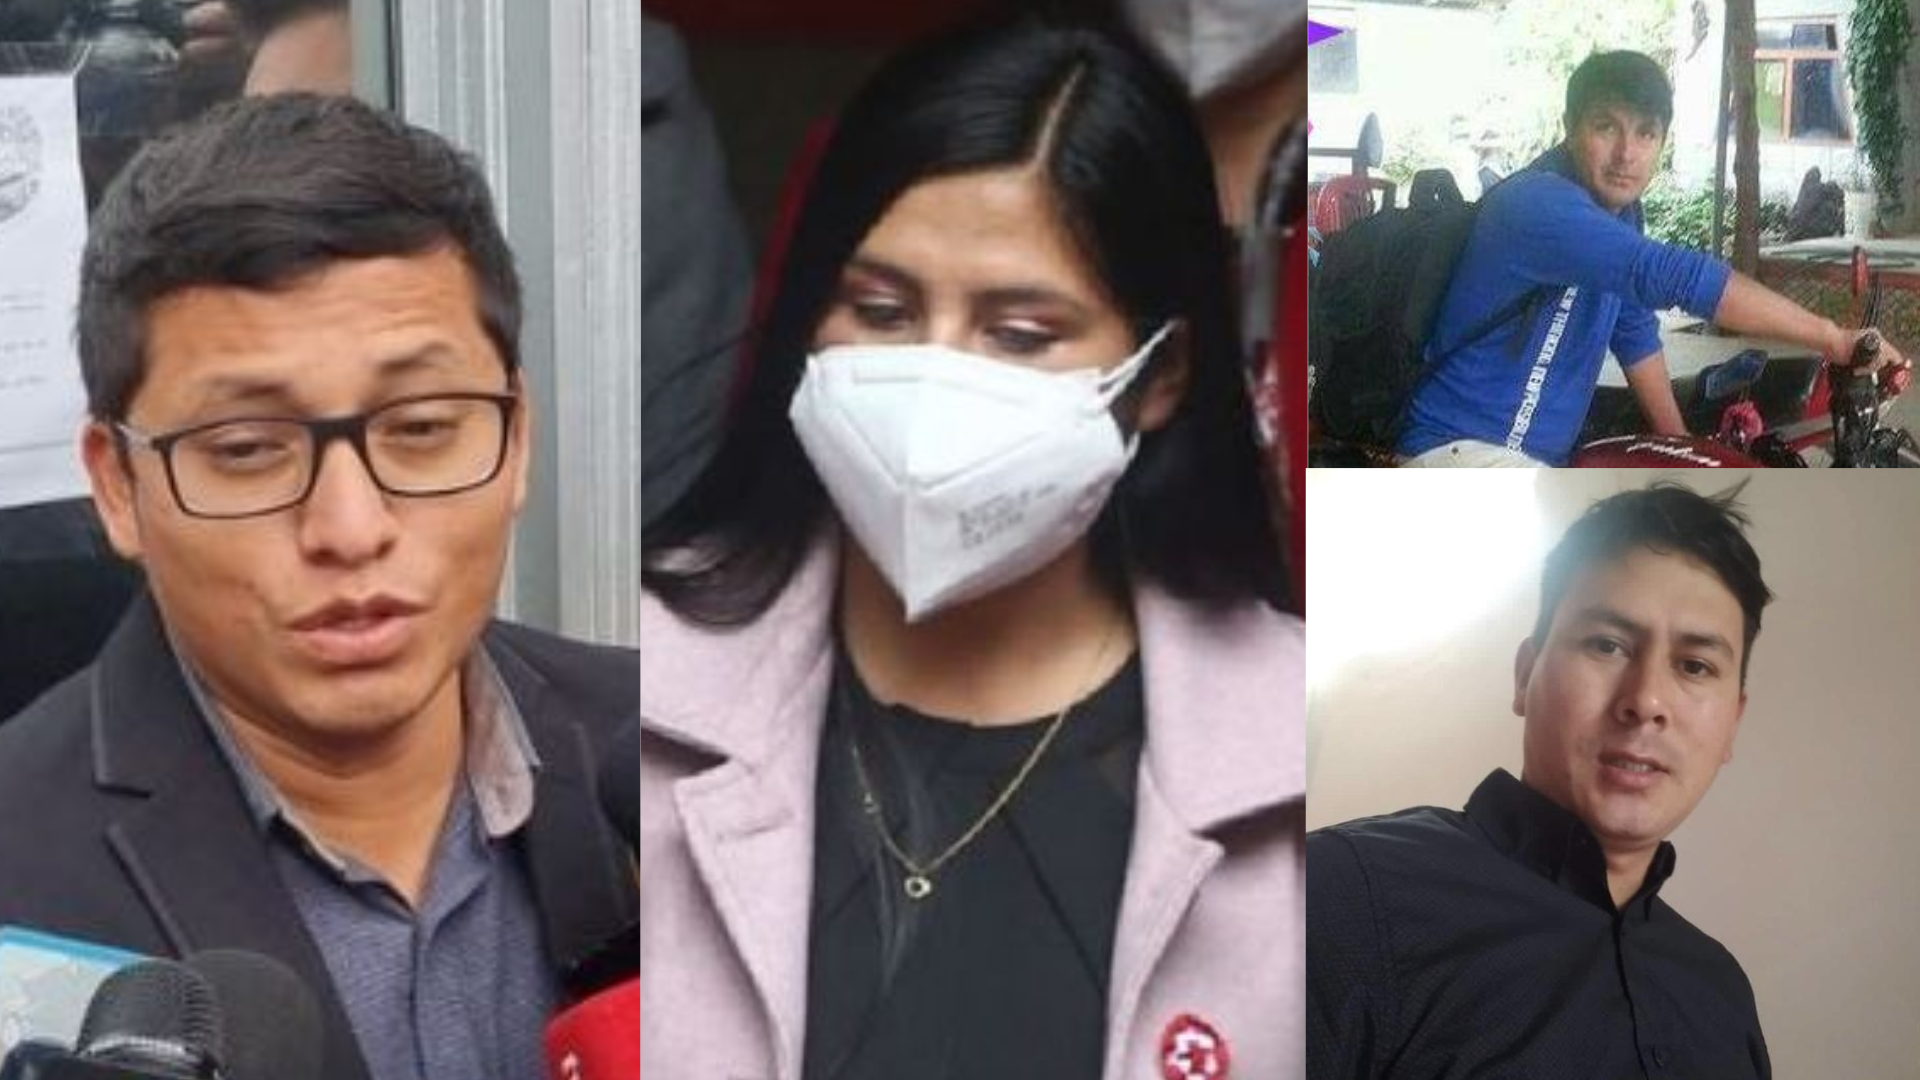 Caso Yenifer Paredes: Hugo y Anggi Espino fueron puestos en libertad luego de proporcionar “datos de calidad” a la justicia